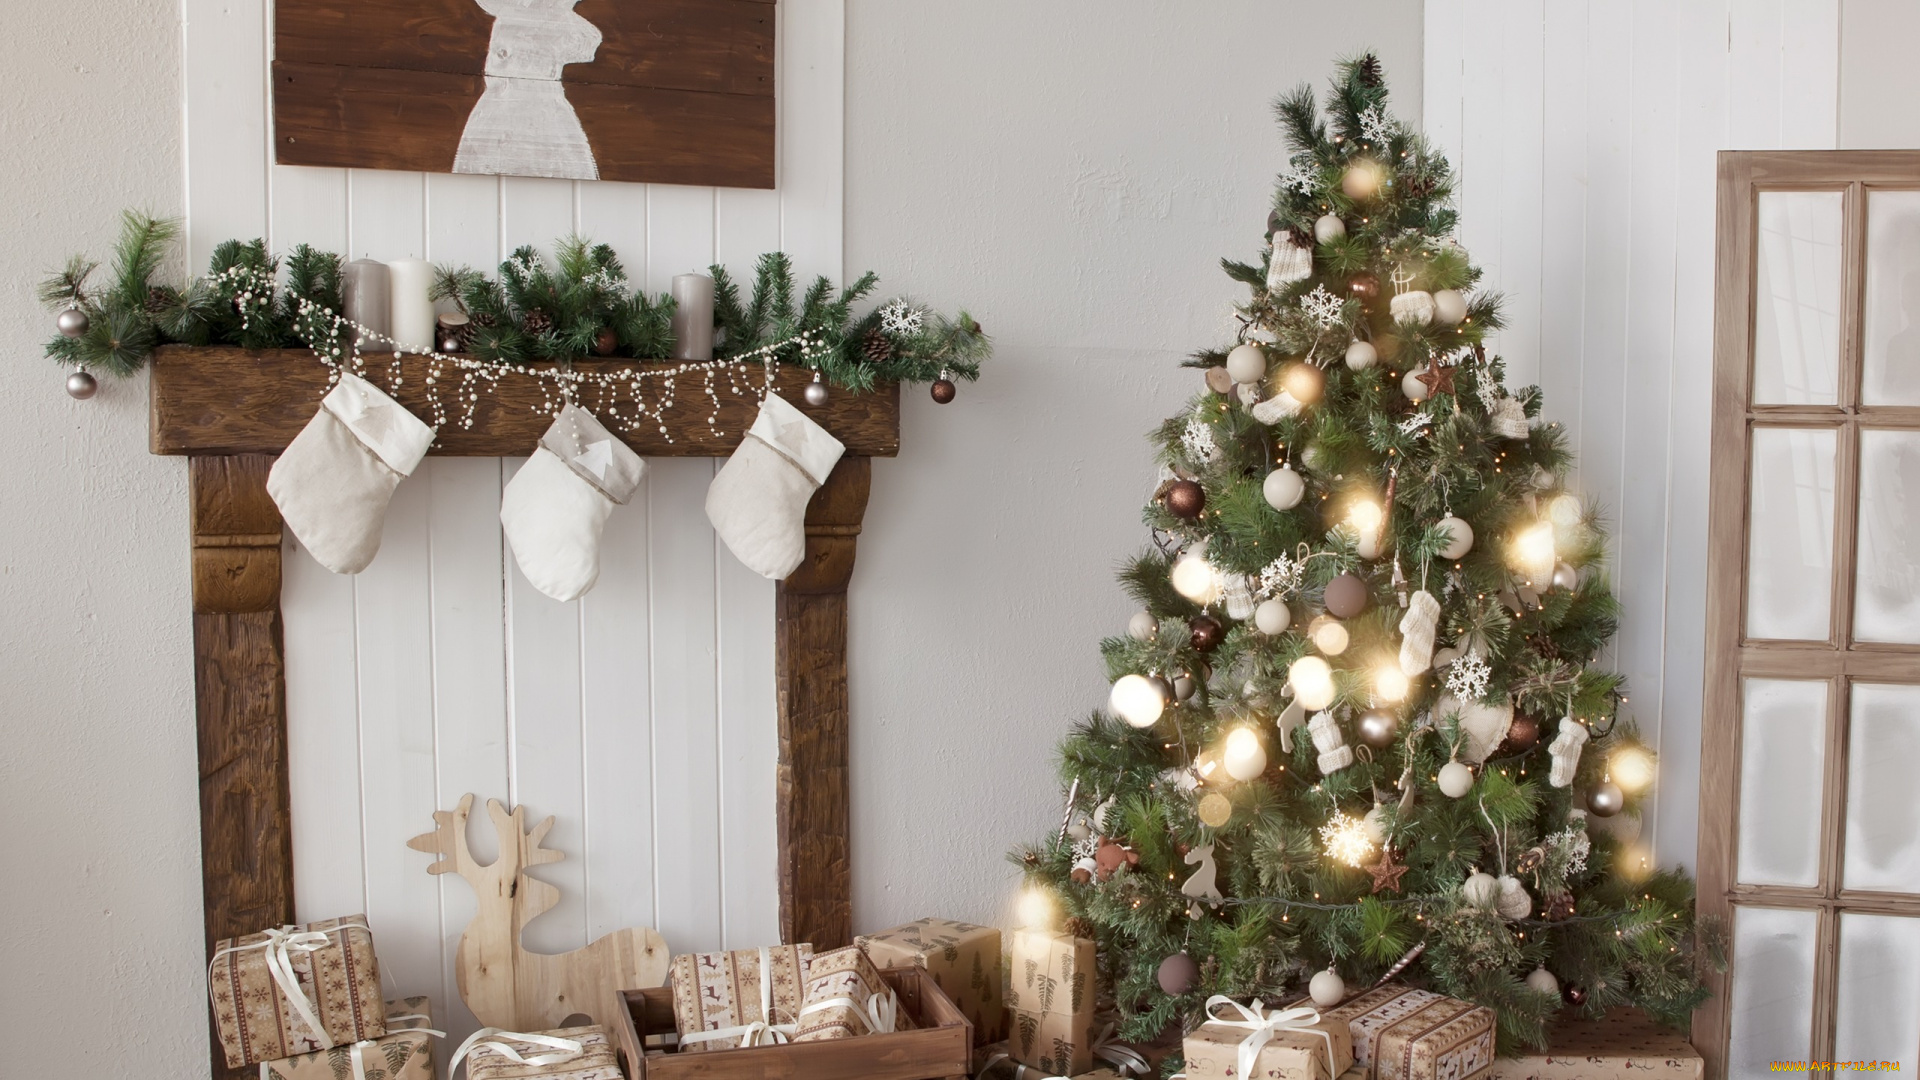 праздничные, Ёлки, новый, год, design, interior, подарки, merry, christmas, игрушки, white, home, decoration, gifts, holiday, celebration, украшения, елка, tree, рождество